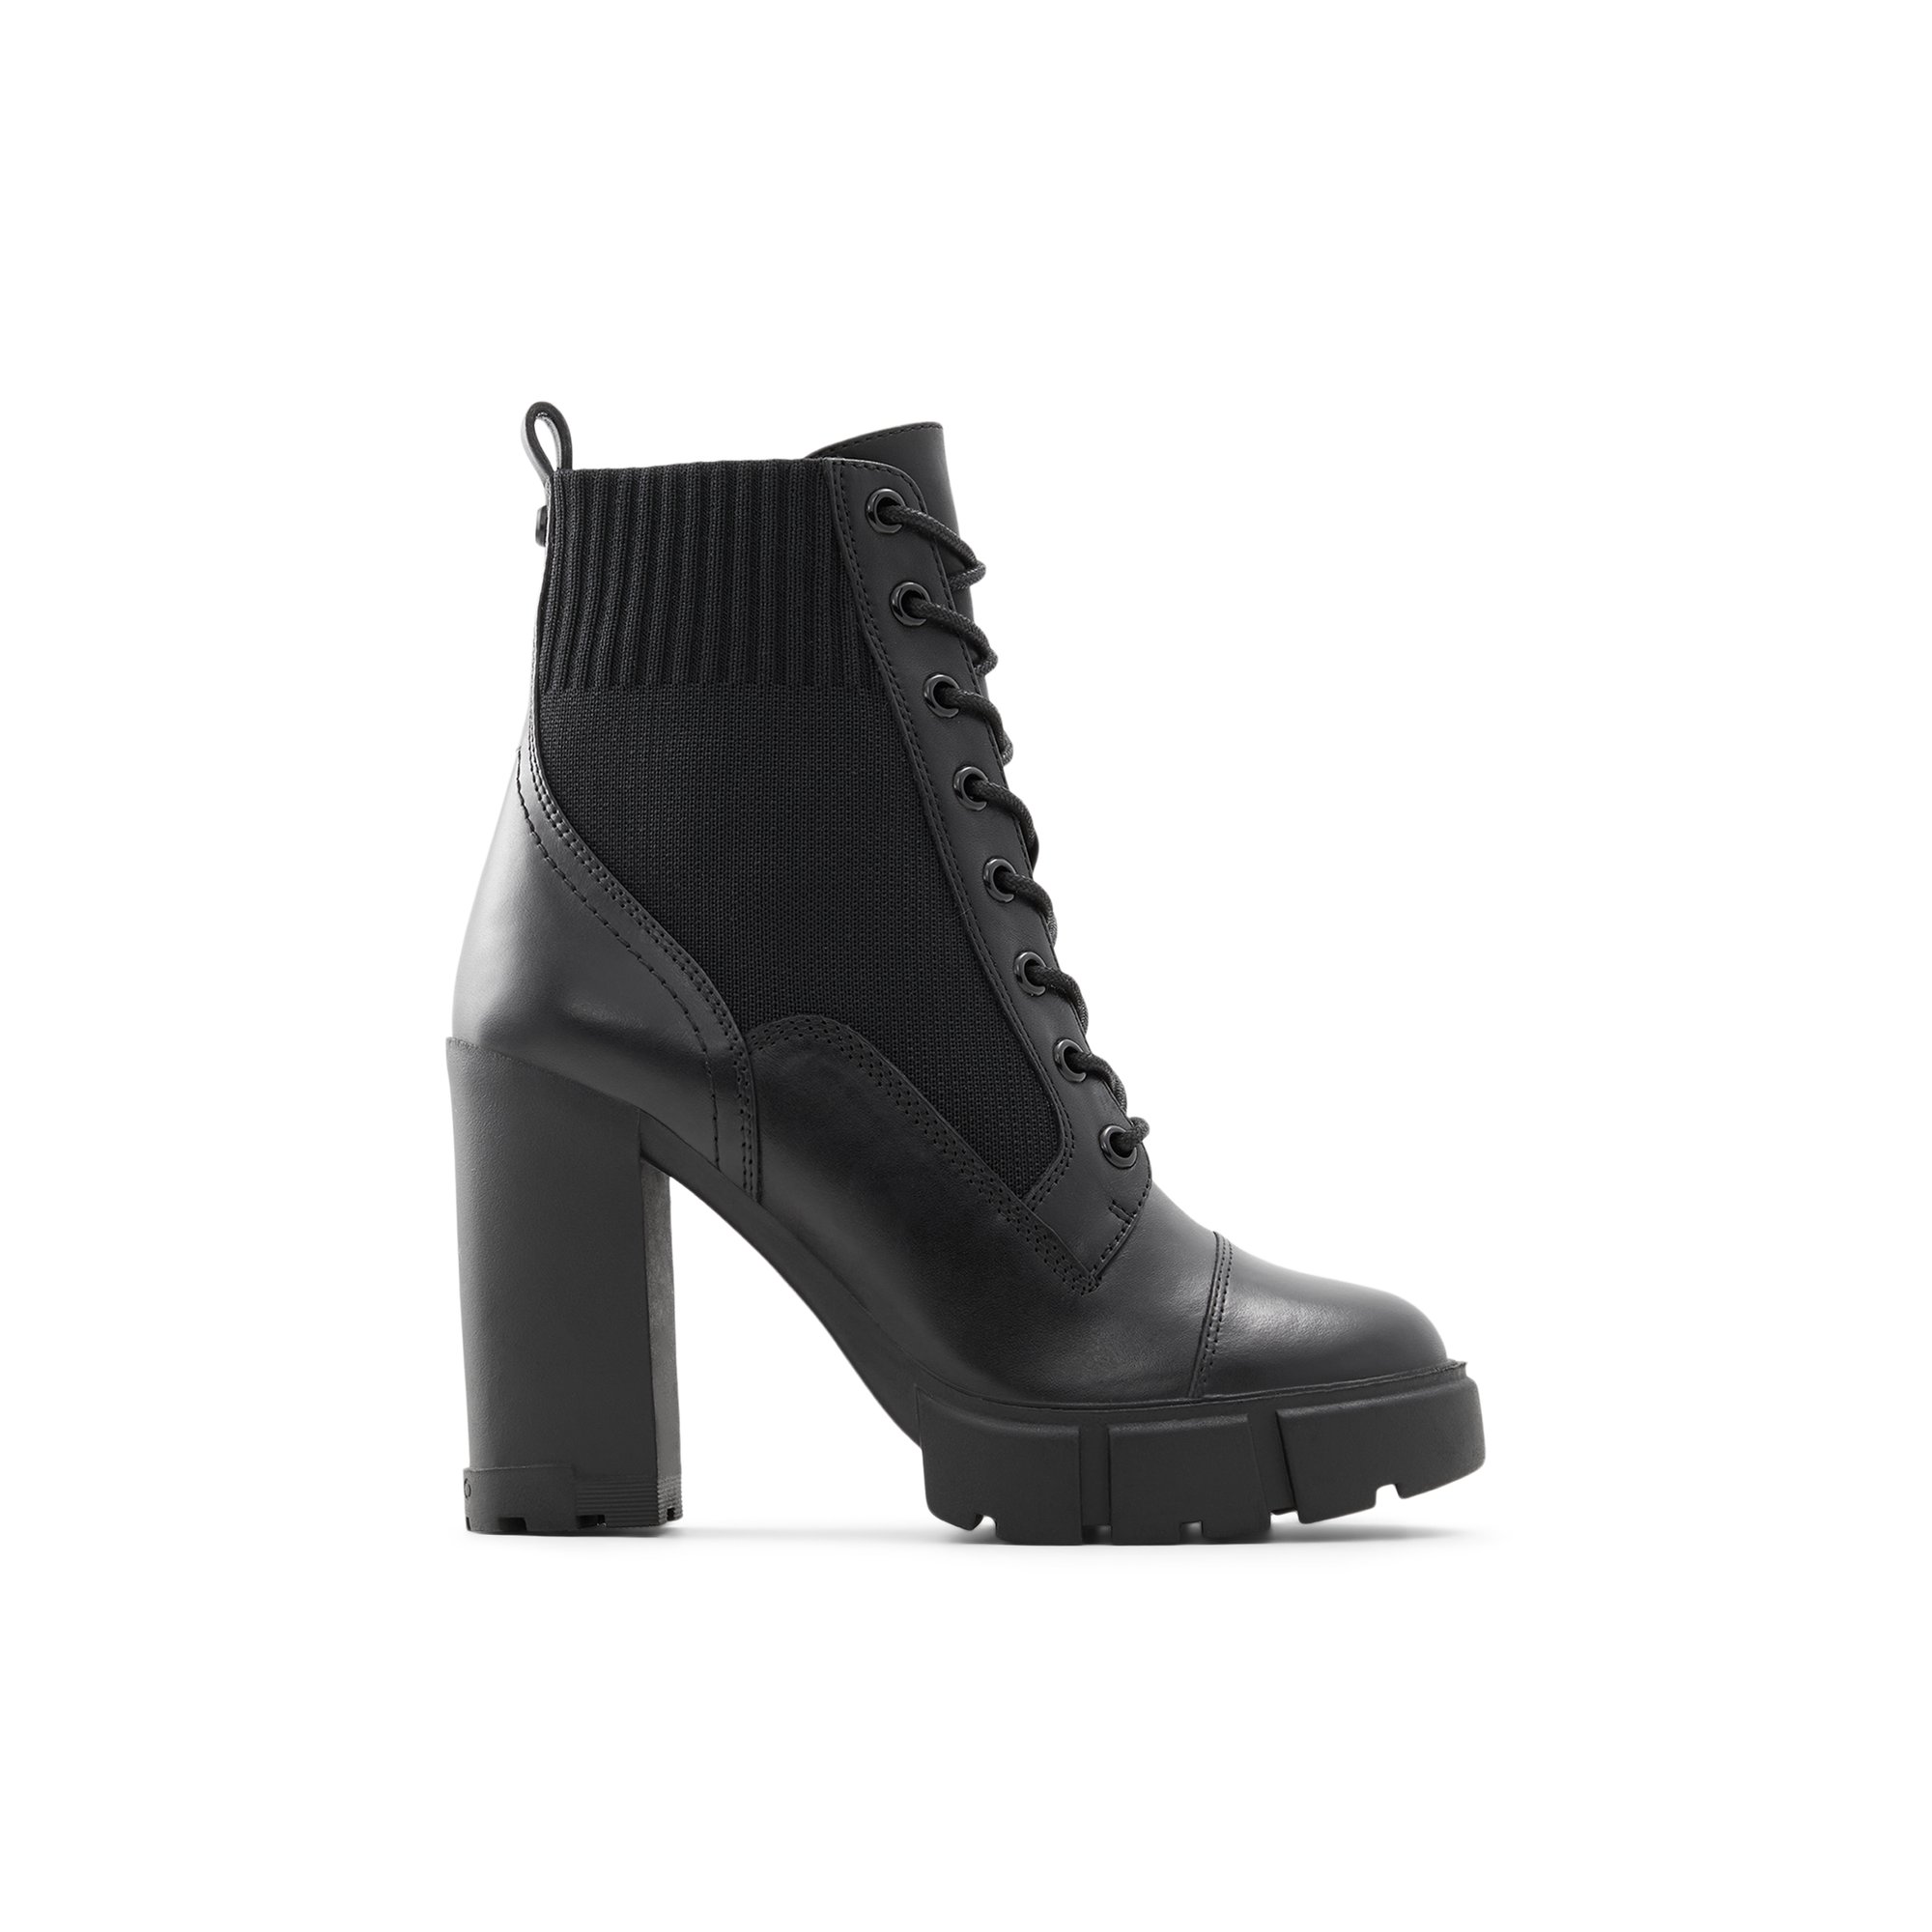 ALDO Rebel - Women's Boots Combat - Black